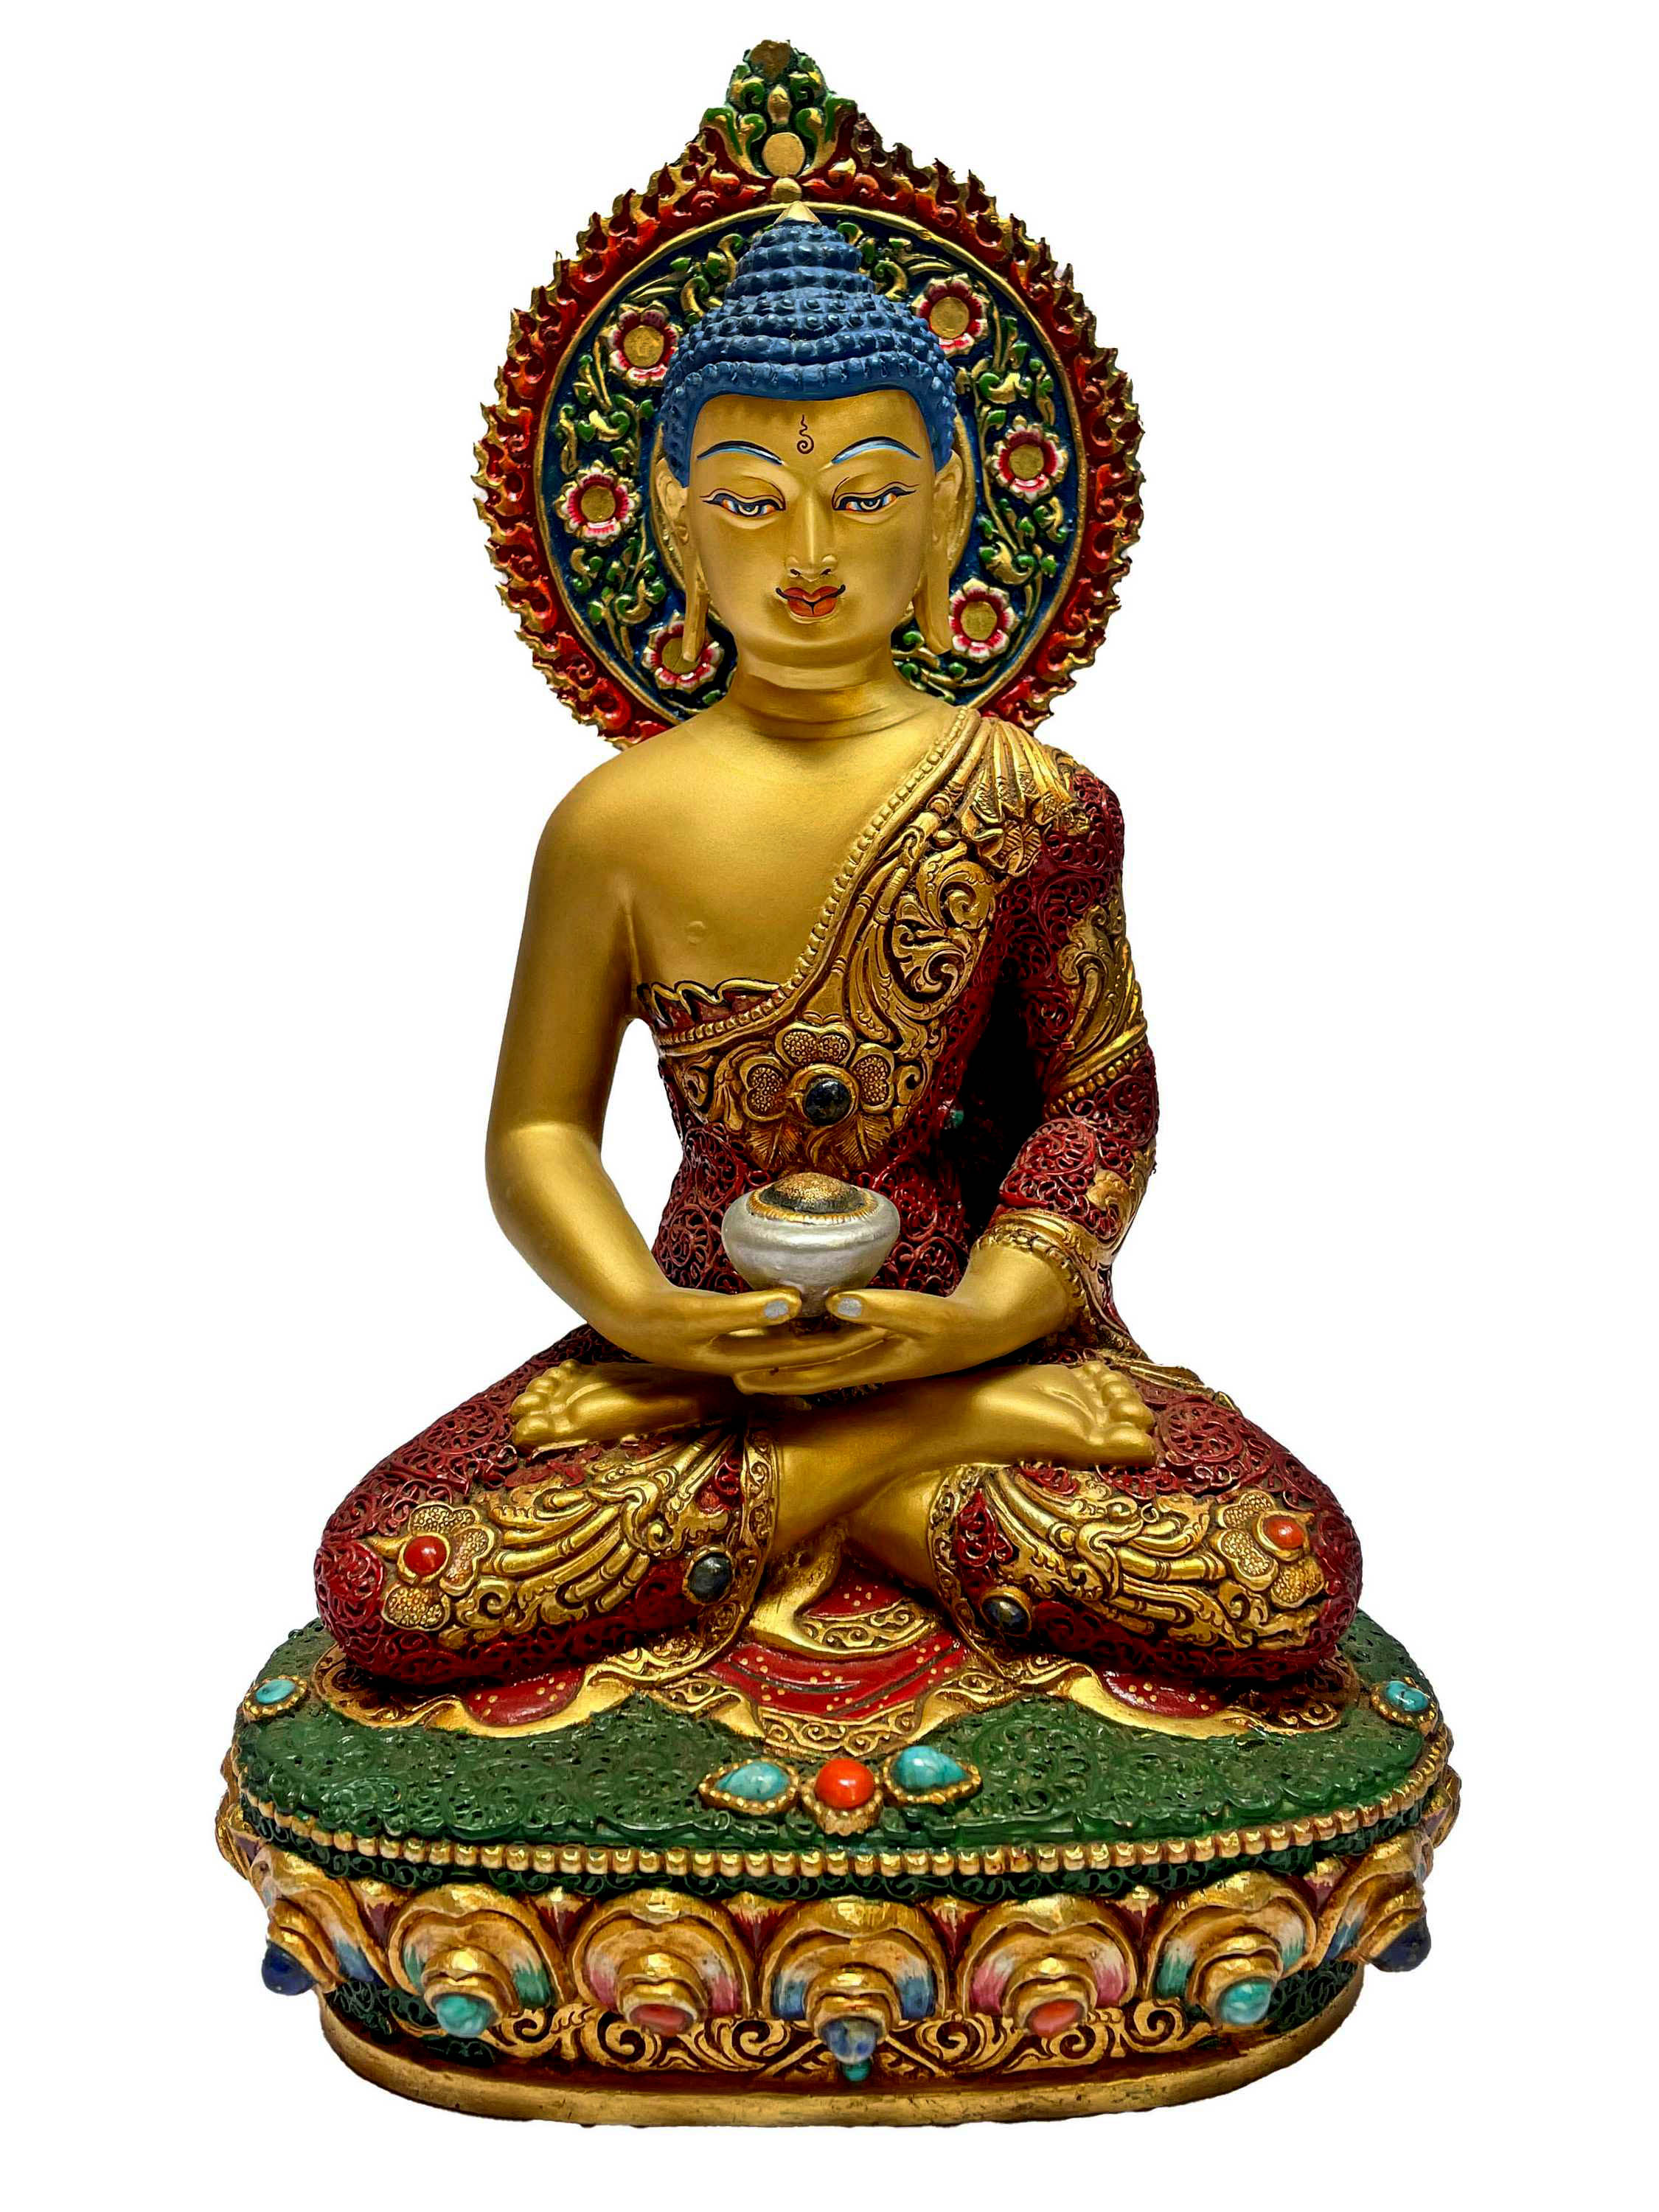 Buddhist Statue Of Three Buddha Set, With Shakyamuni Buddha, Amitabha Buddha And Medicine Buddha, face Painted, Stone Setting, Partly Gold Plated